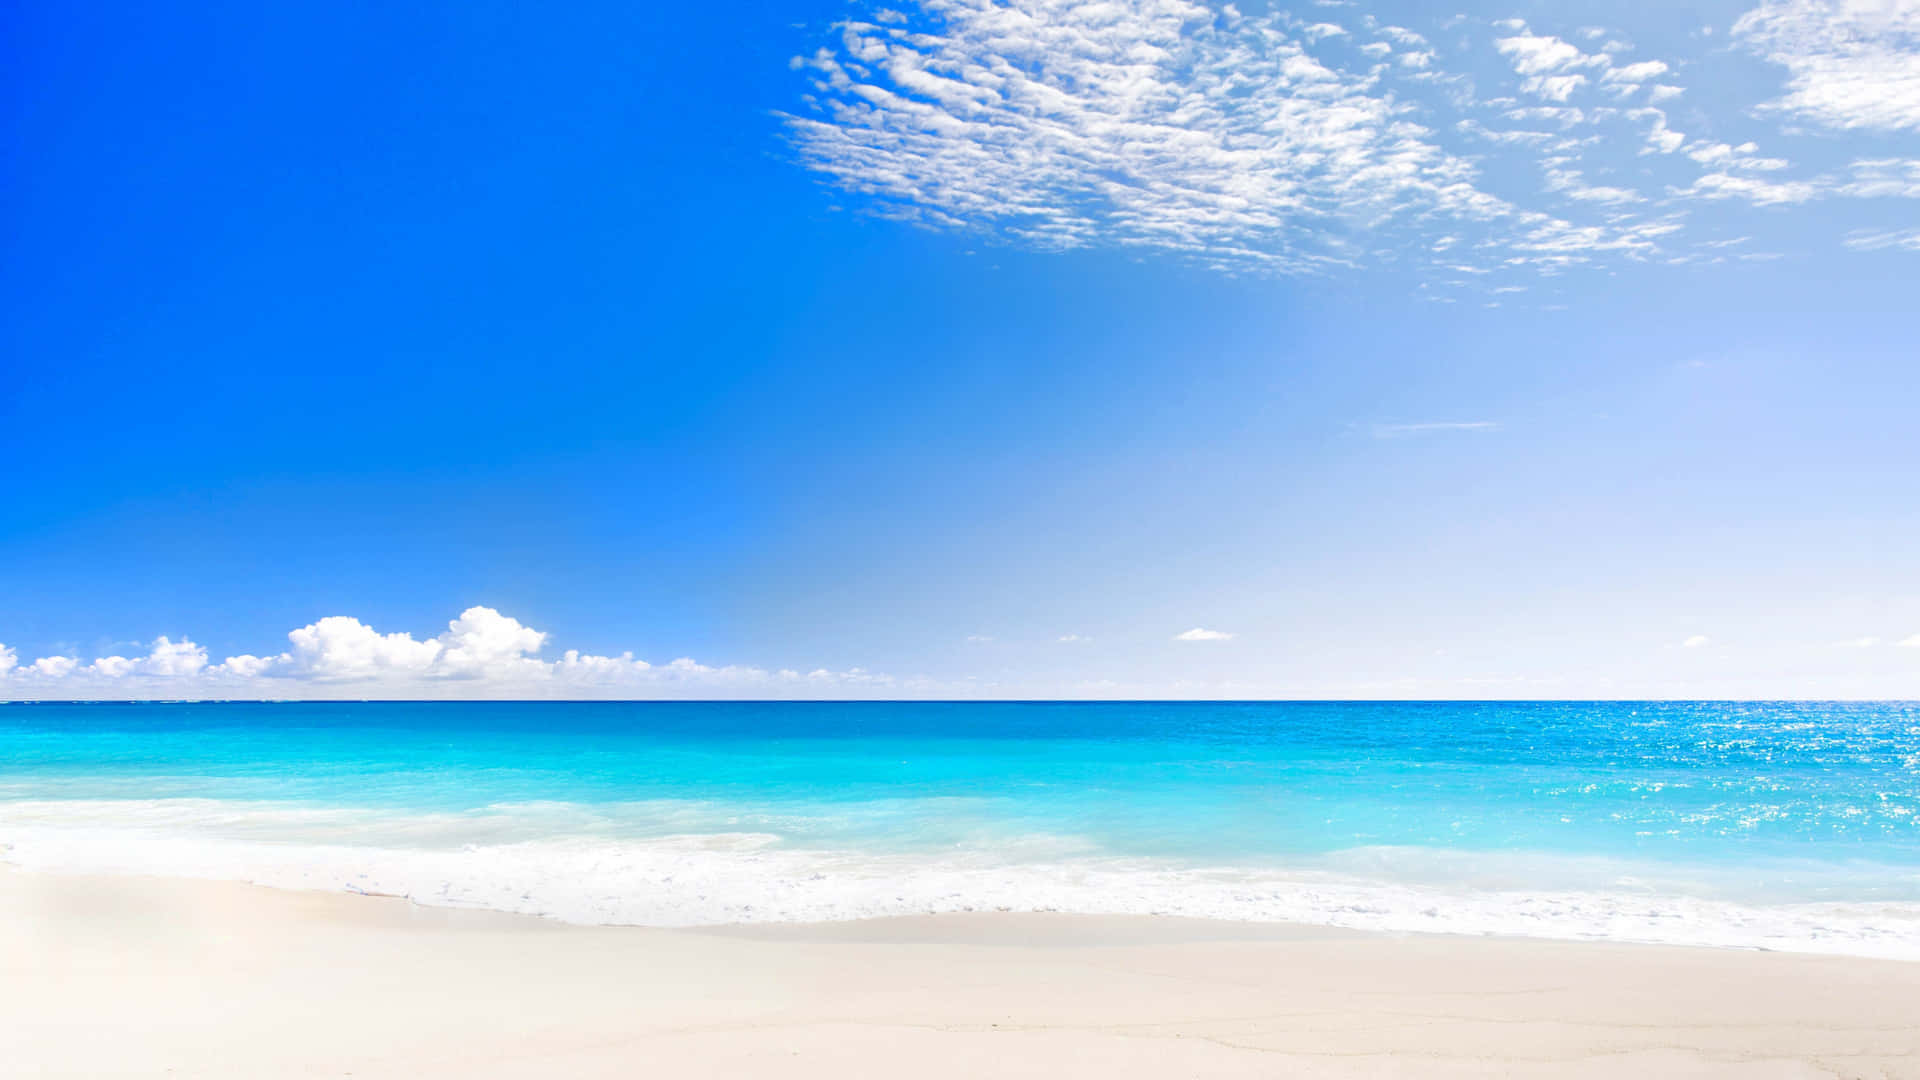 Scoprile Vibrazioni Rilassanti Di Una Giornata Soleggiata In Spiaggia